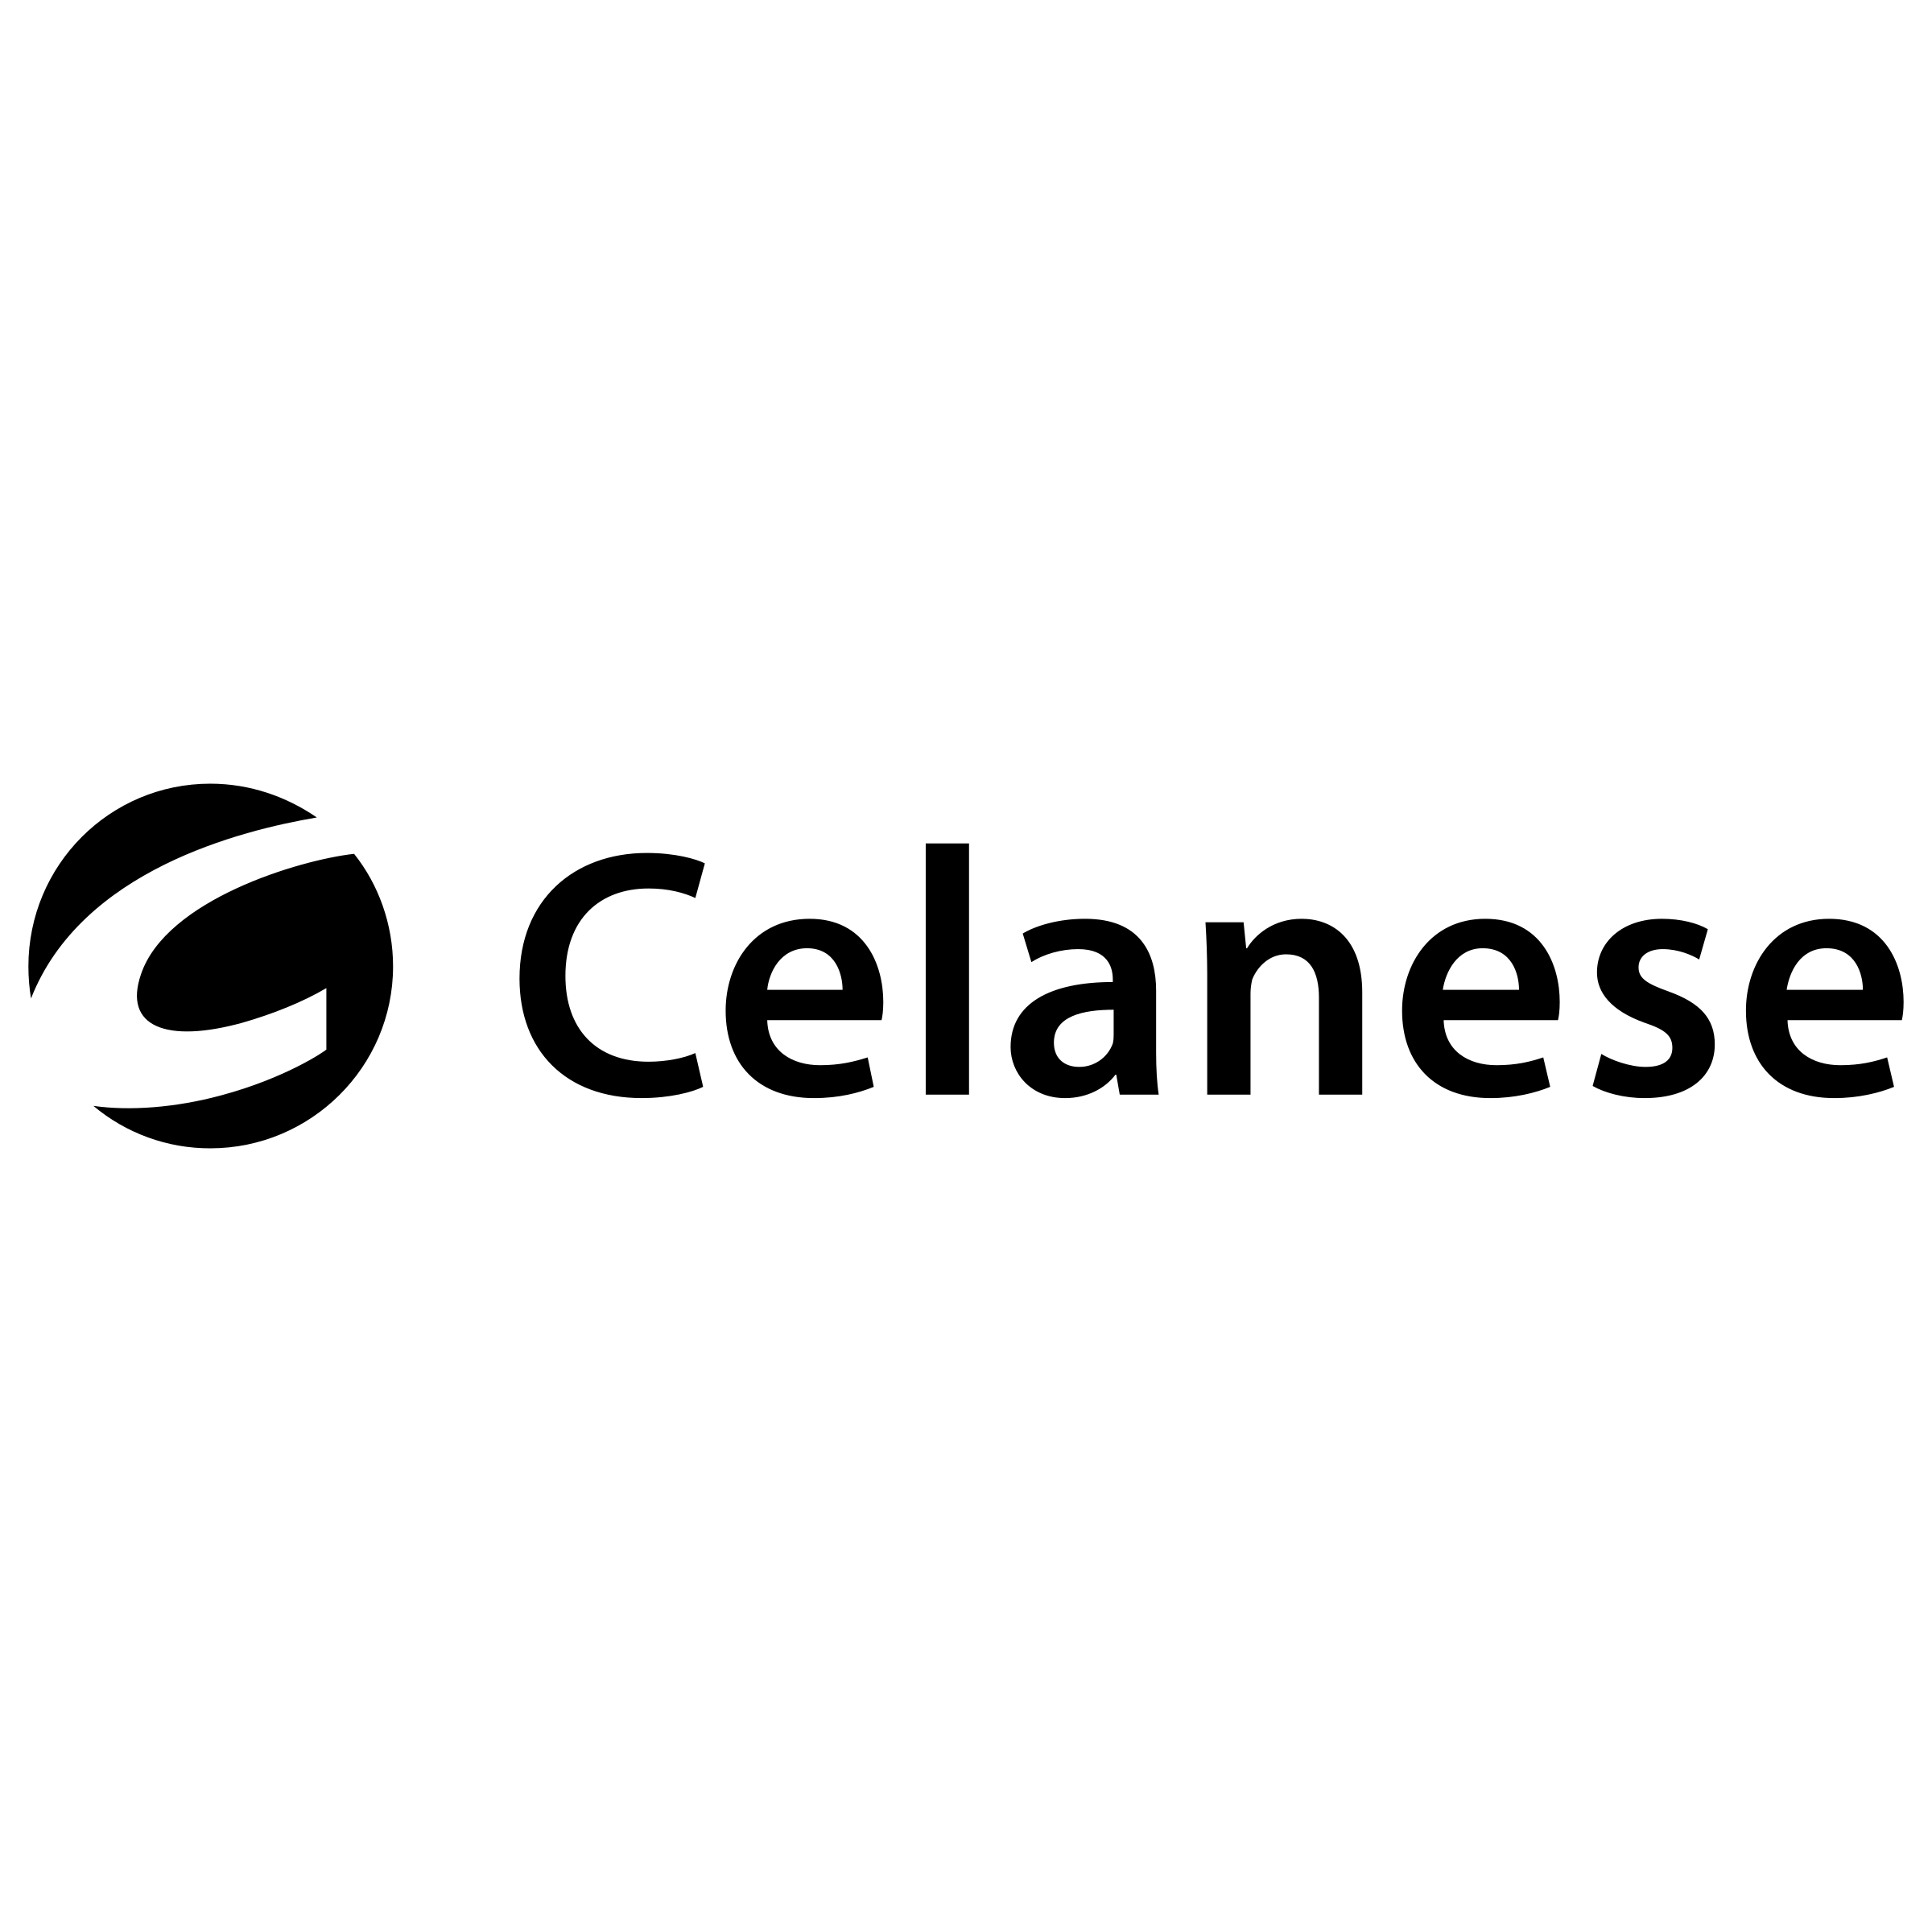 Celanese Logo - Celanese Logo PNG Transparent & SVG Vector